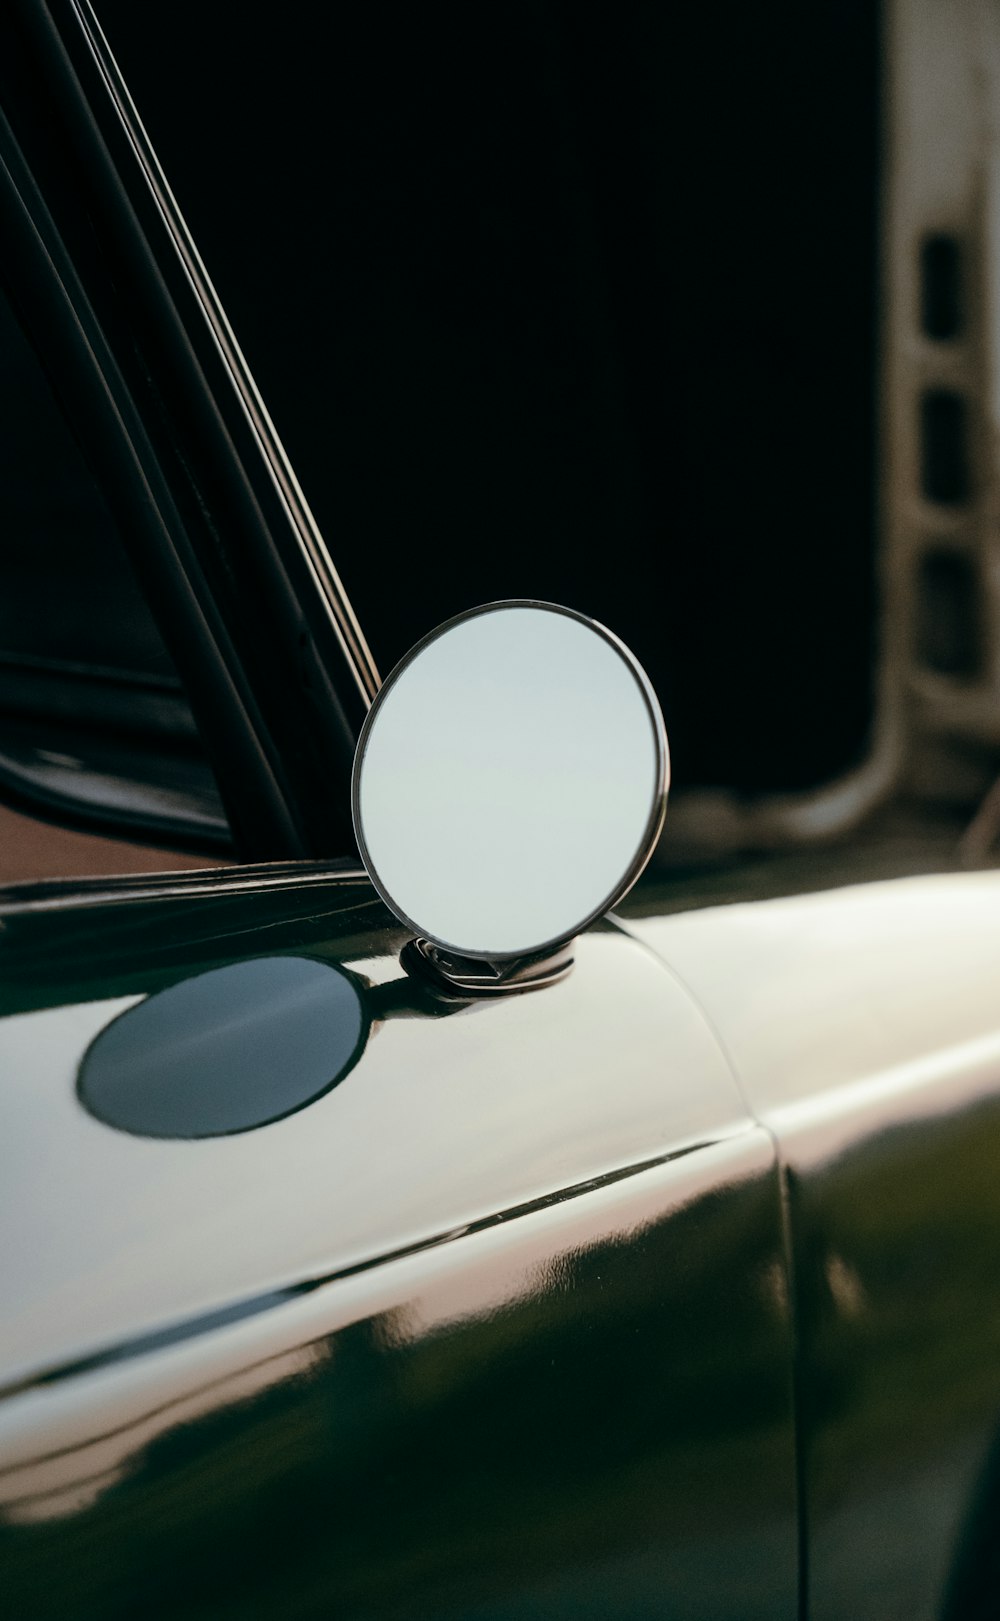 Nahaufnahme eines Spiegels an einem Auto